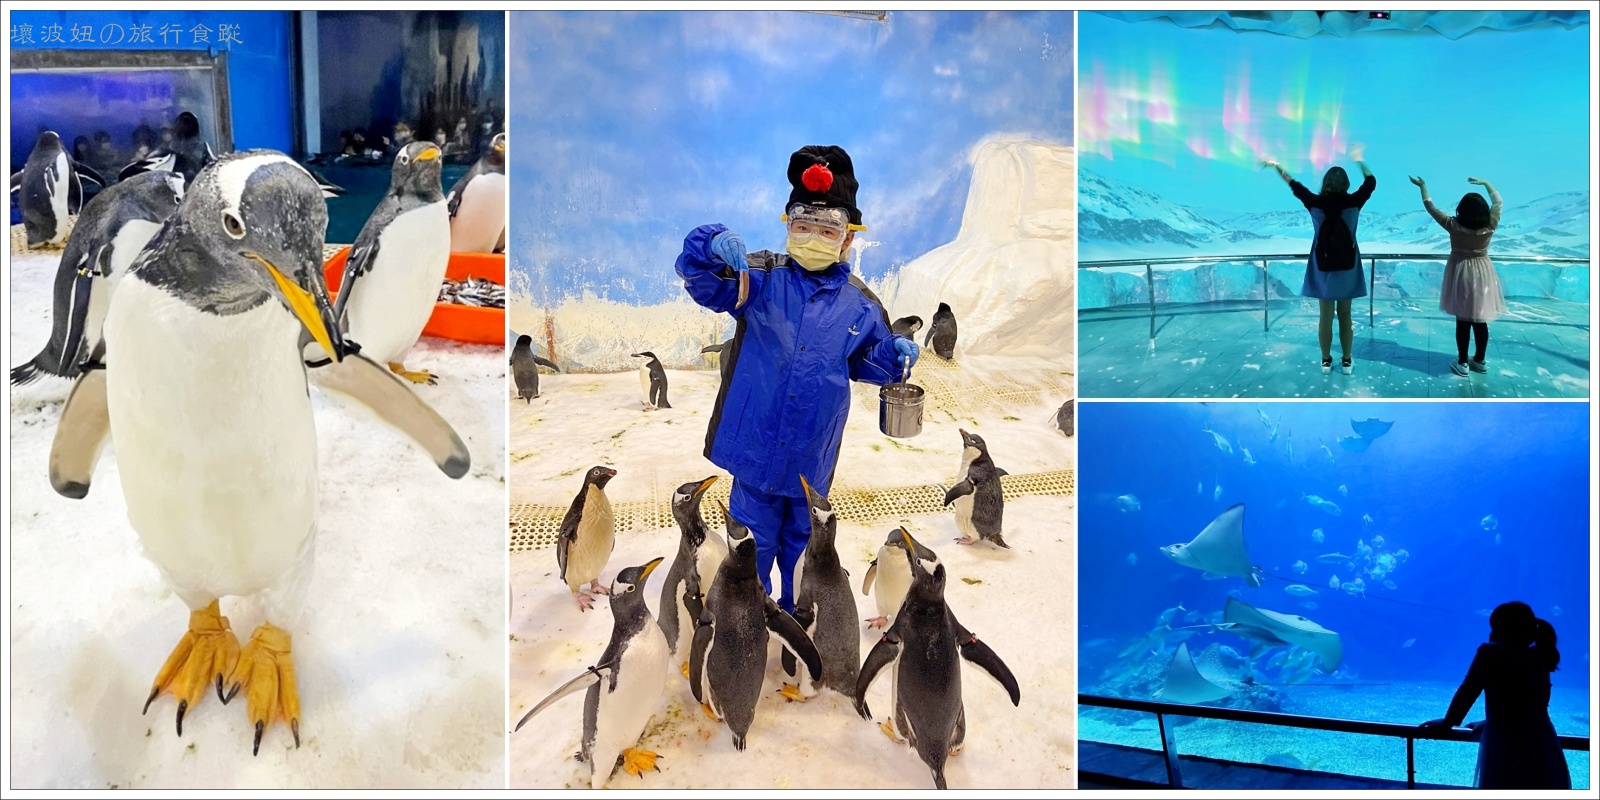 【屏東親子景點】我與企鵝的0.1毫米｜企鵝飼育照護體驗 - 絕對秒殺的屏東海生館餵企鵝體驗 - 遊｛屏東｝ - 壞波妞の旅行食踨